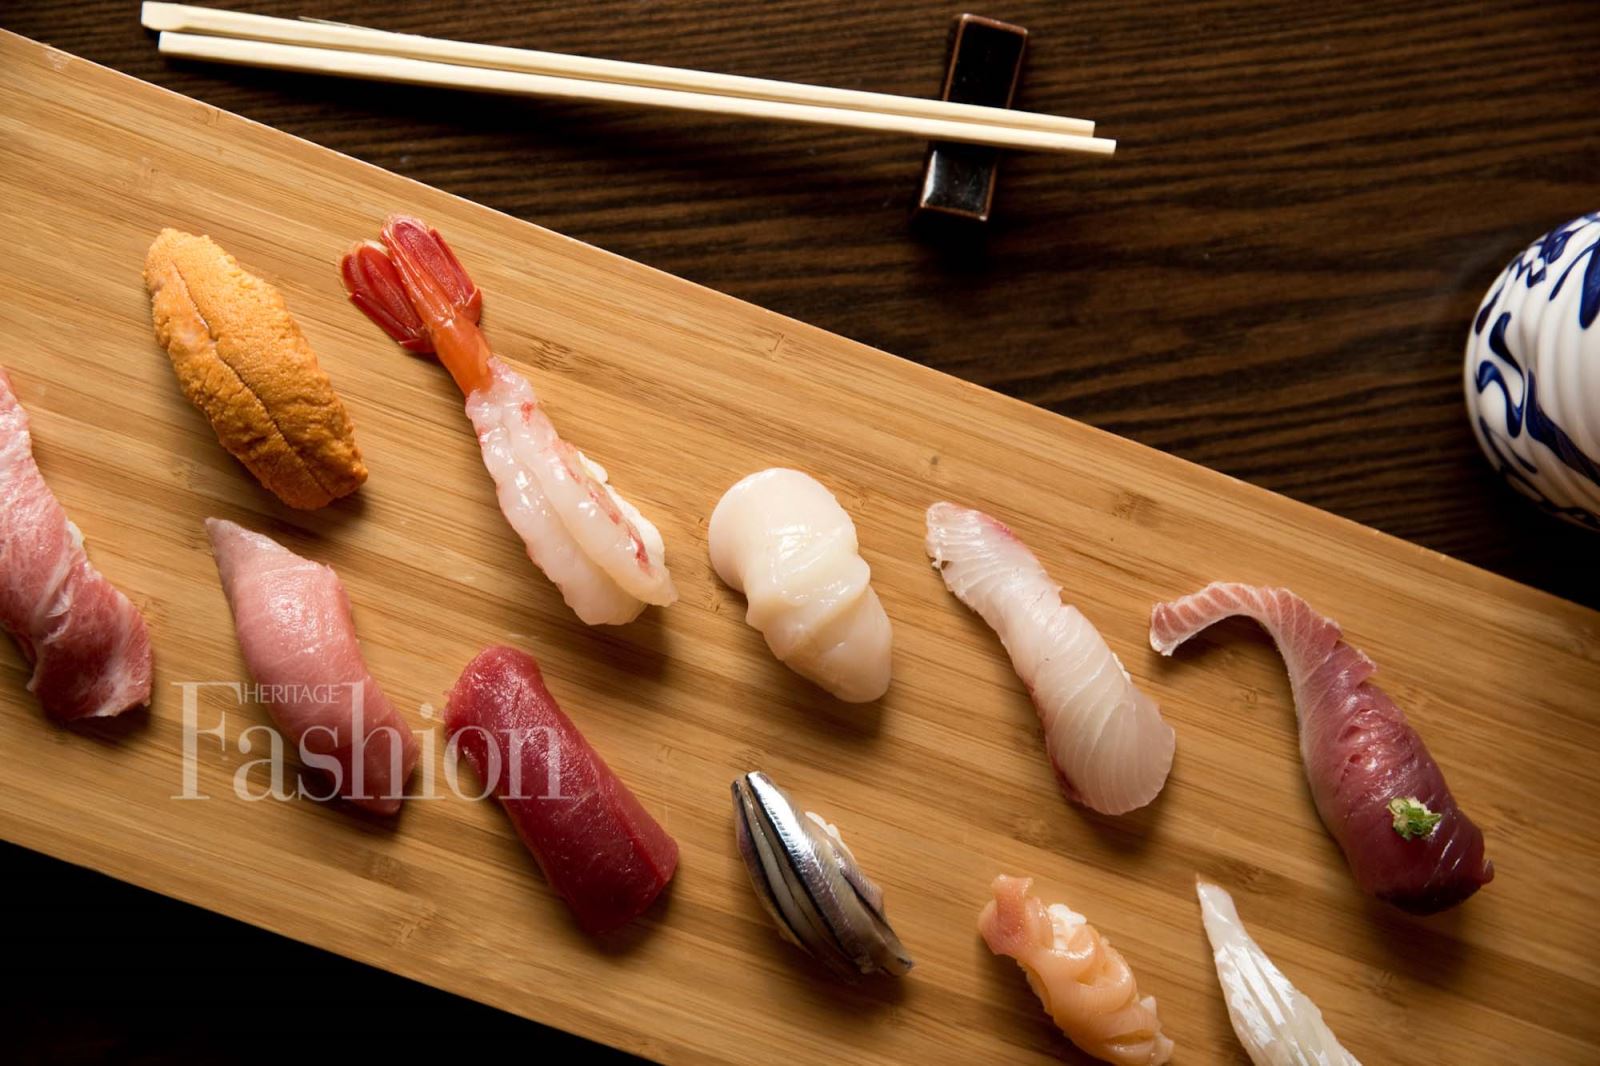 Shushi là một kiệt tác thành công trong cách chế biển ẩm thực của người Nhật Bản